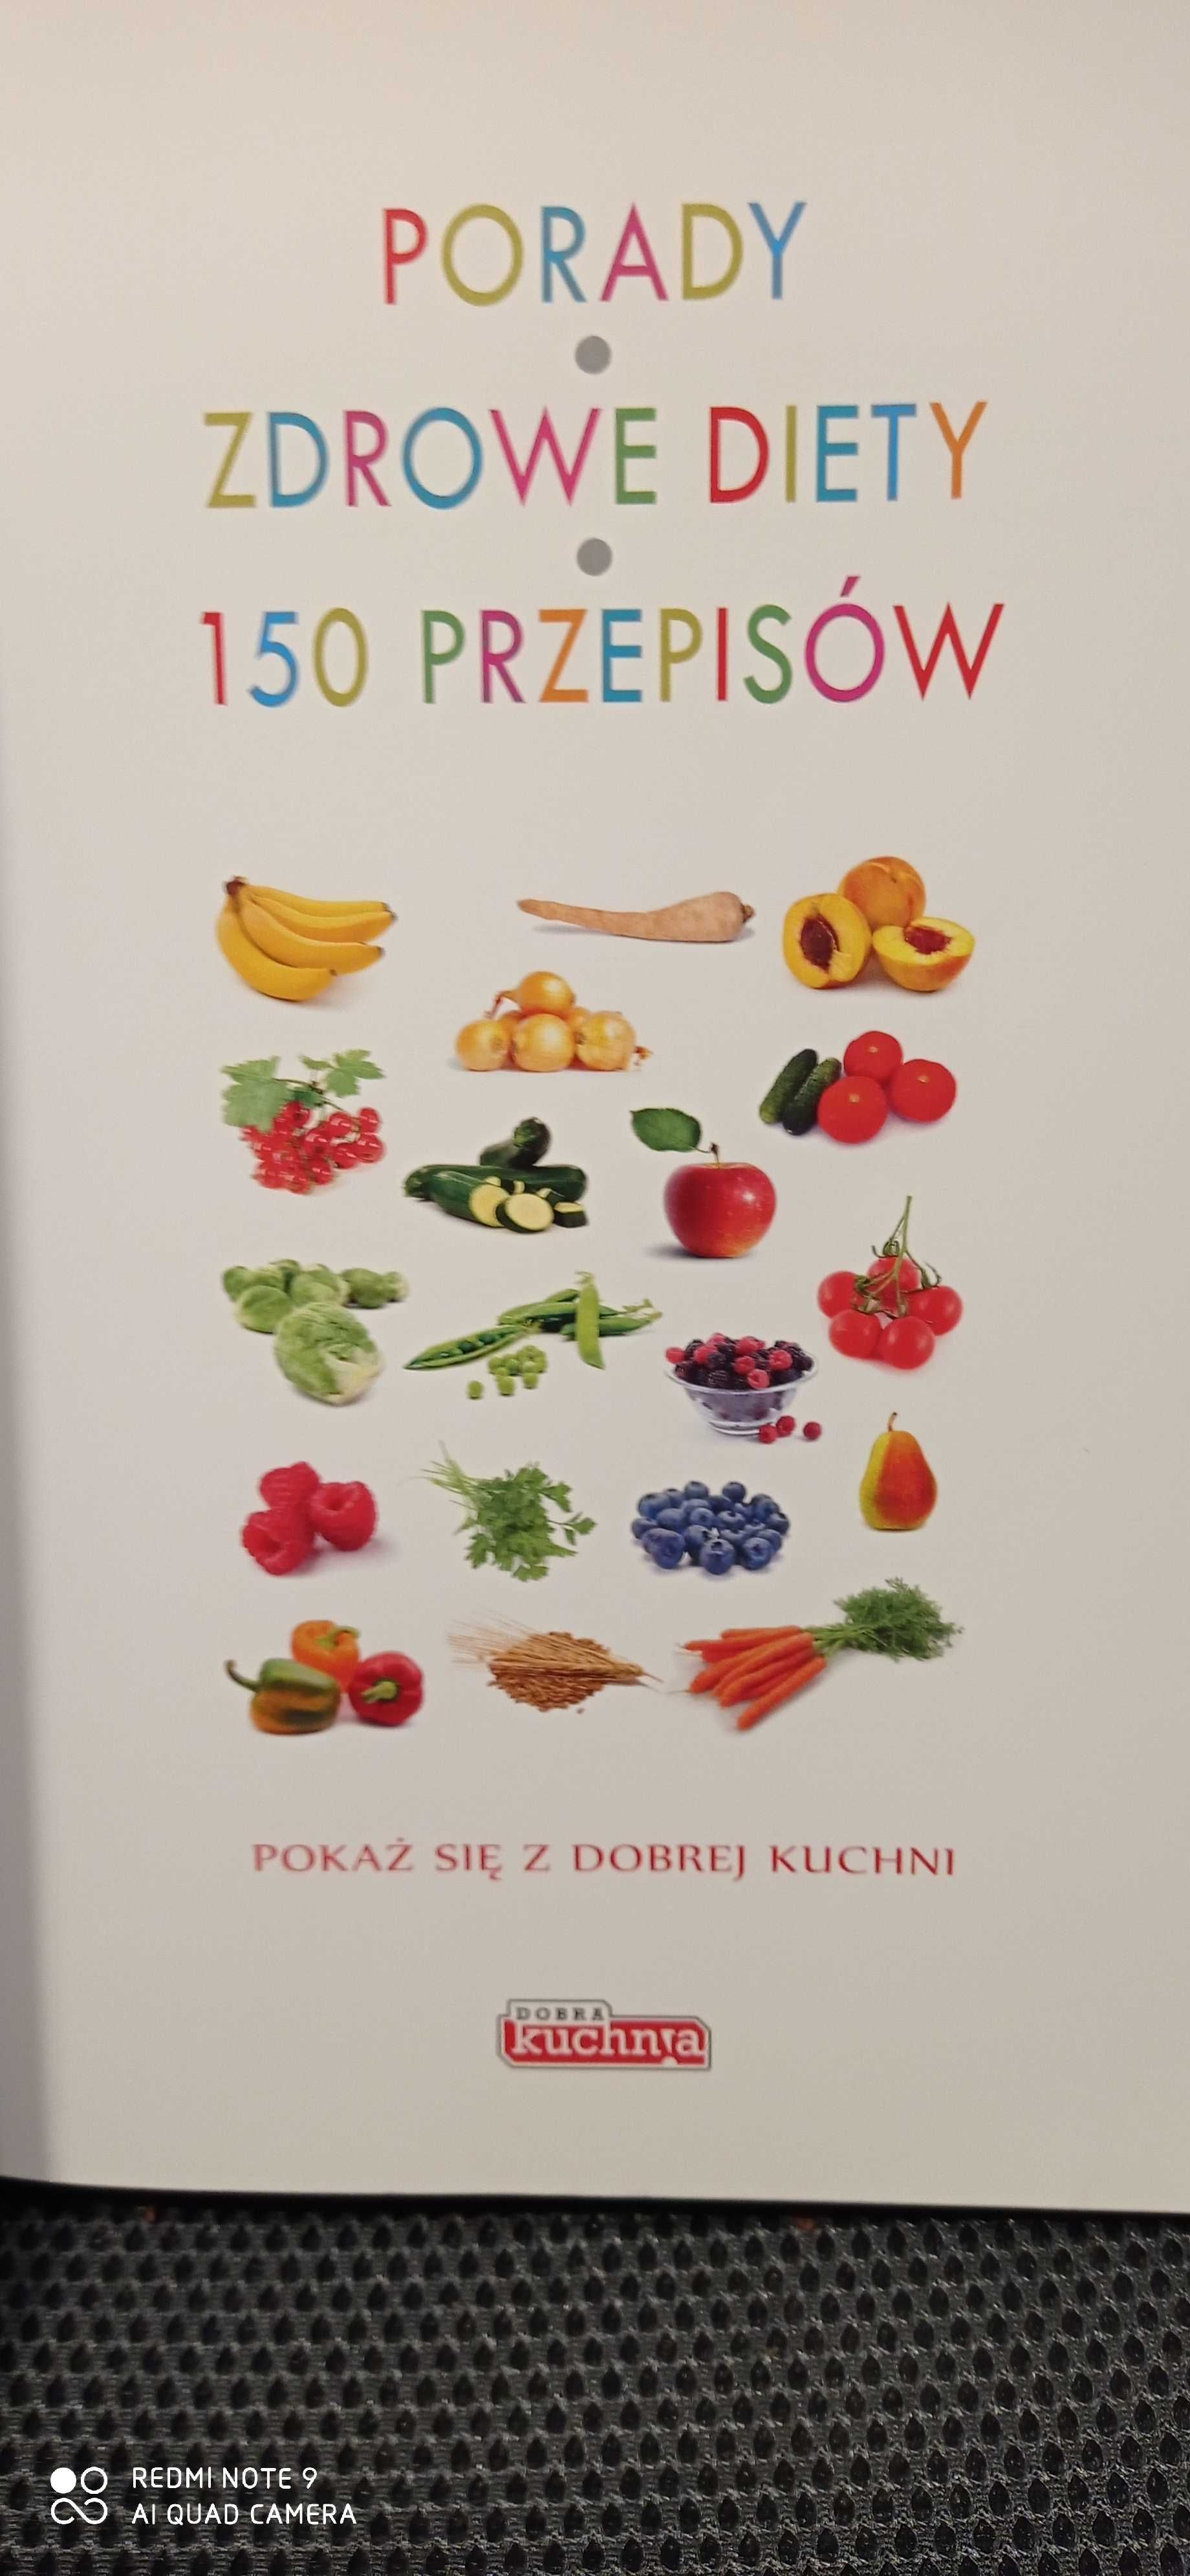 Kuchnia dla dzieci Książka z przepisami